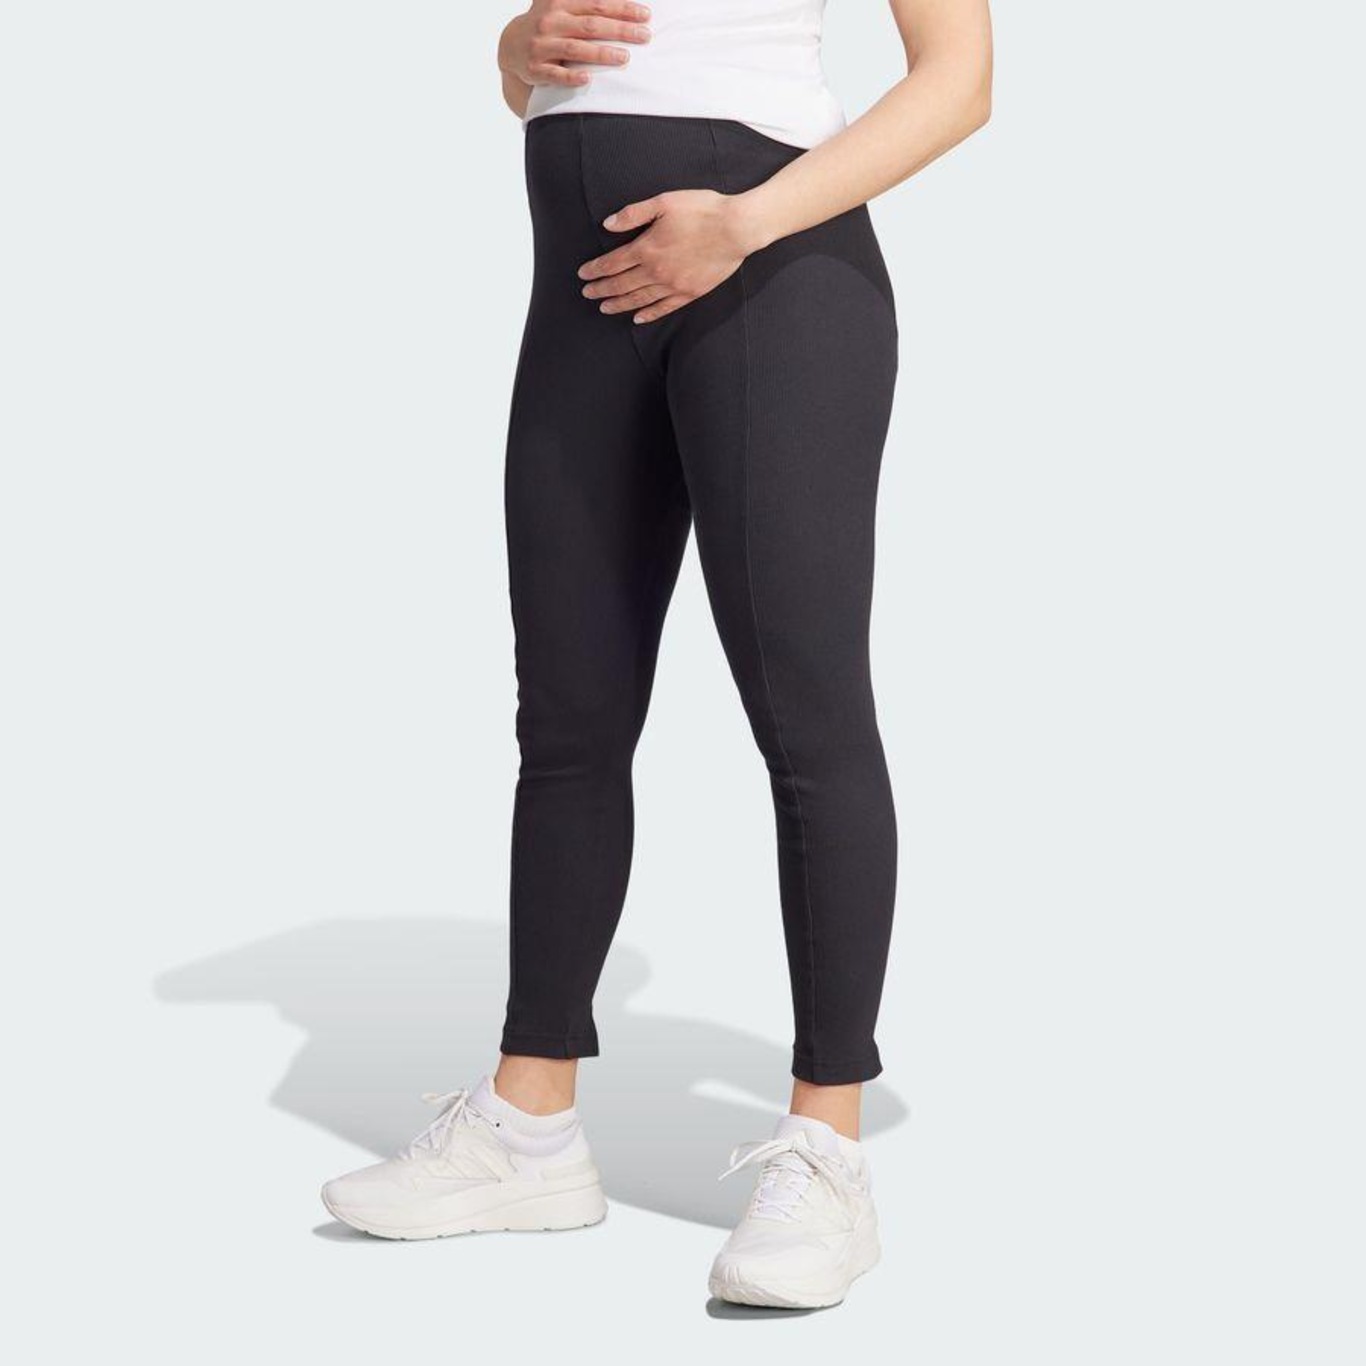 Calça Legging adidas Maternity - Feminina